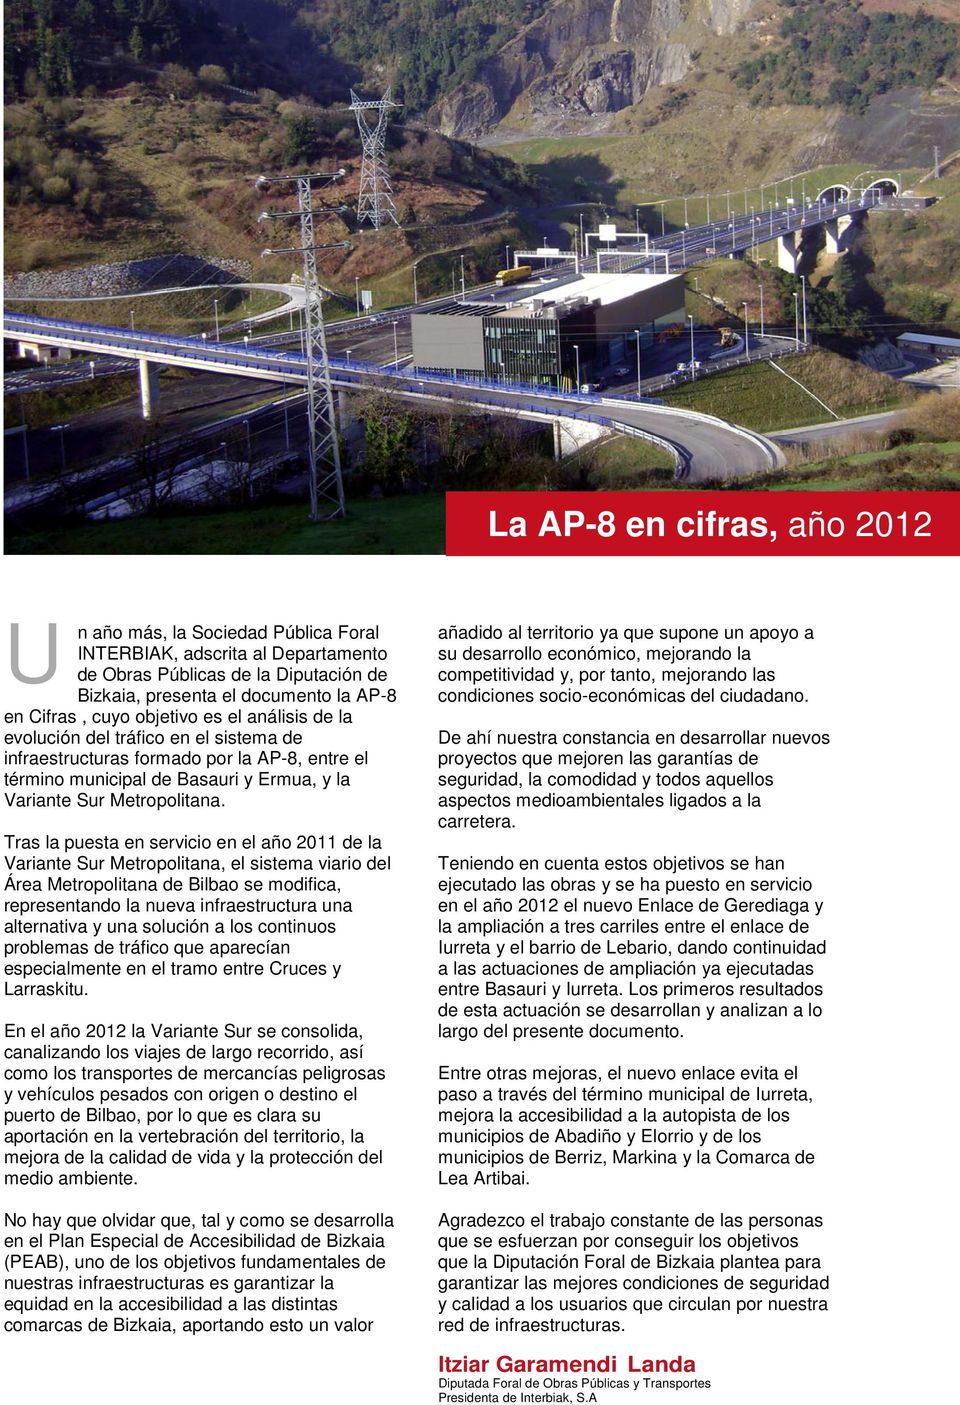 Tras la puesta en servicio en el año 2011 de la Variante Sur Metropolitana, el sistema viario del Área Metropolitana de Bilbao se modifica, representando la nueva infraestructura una alternativa y